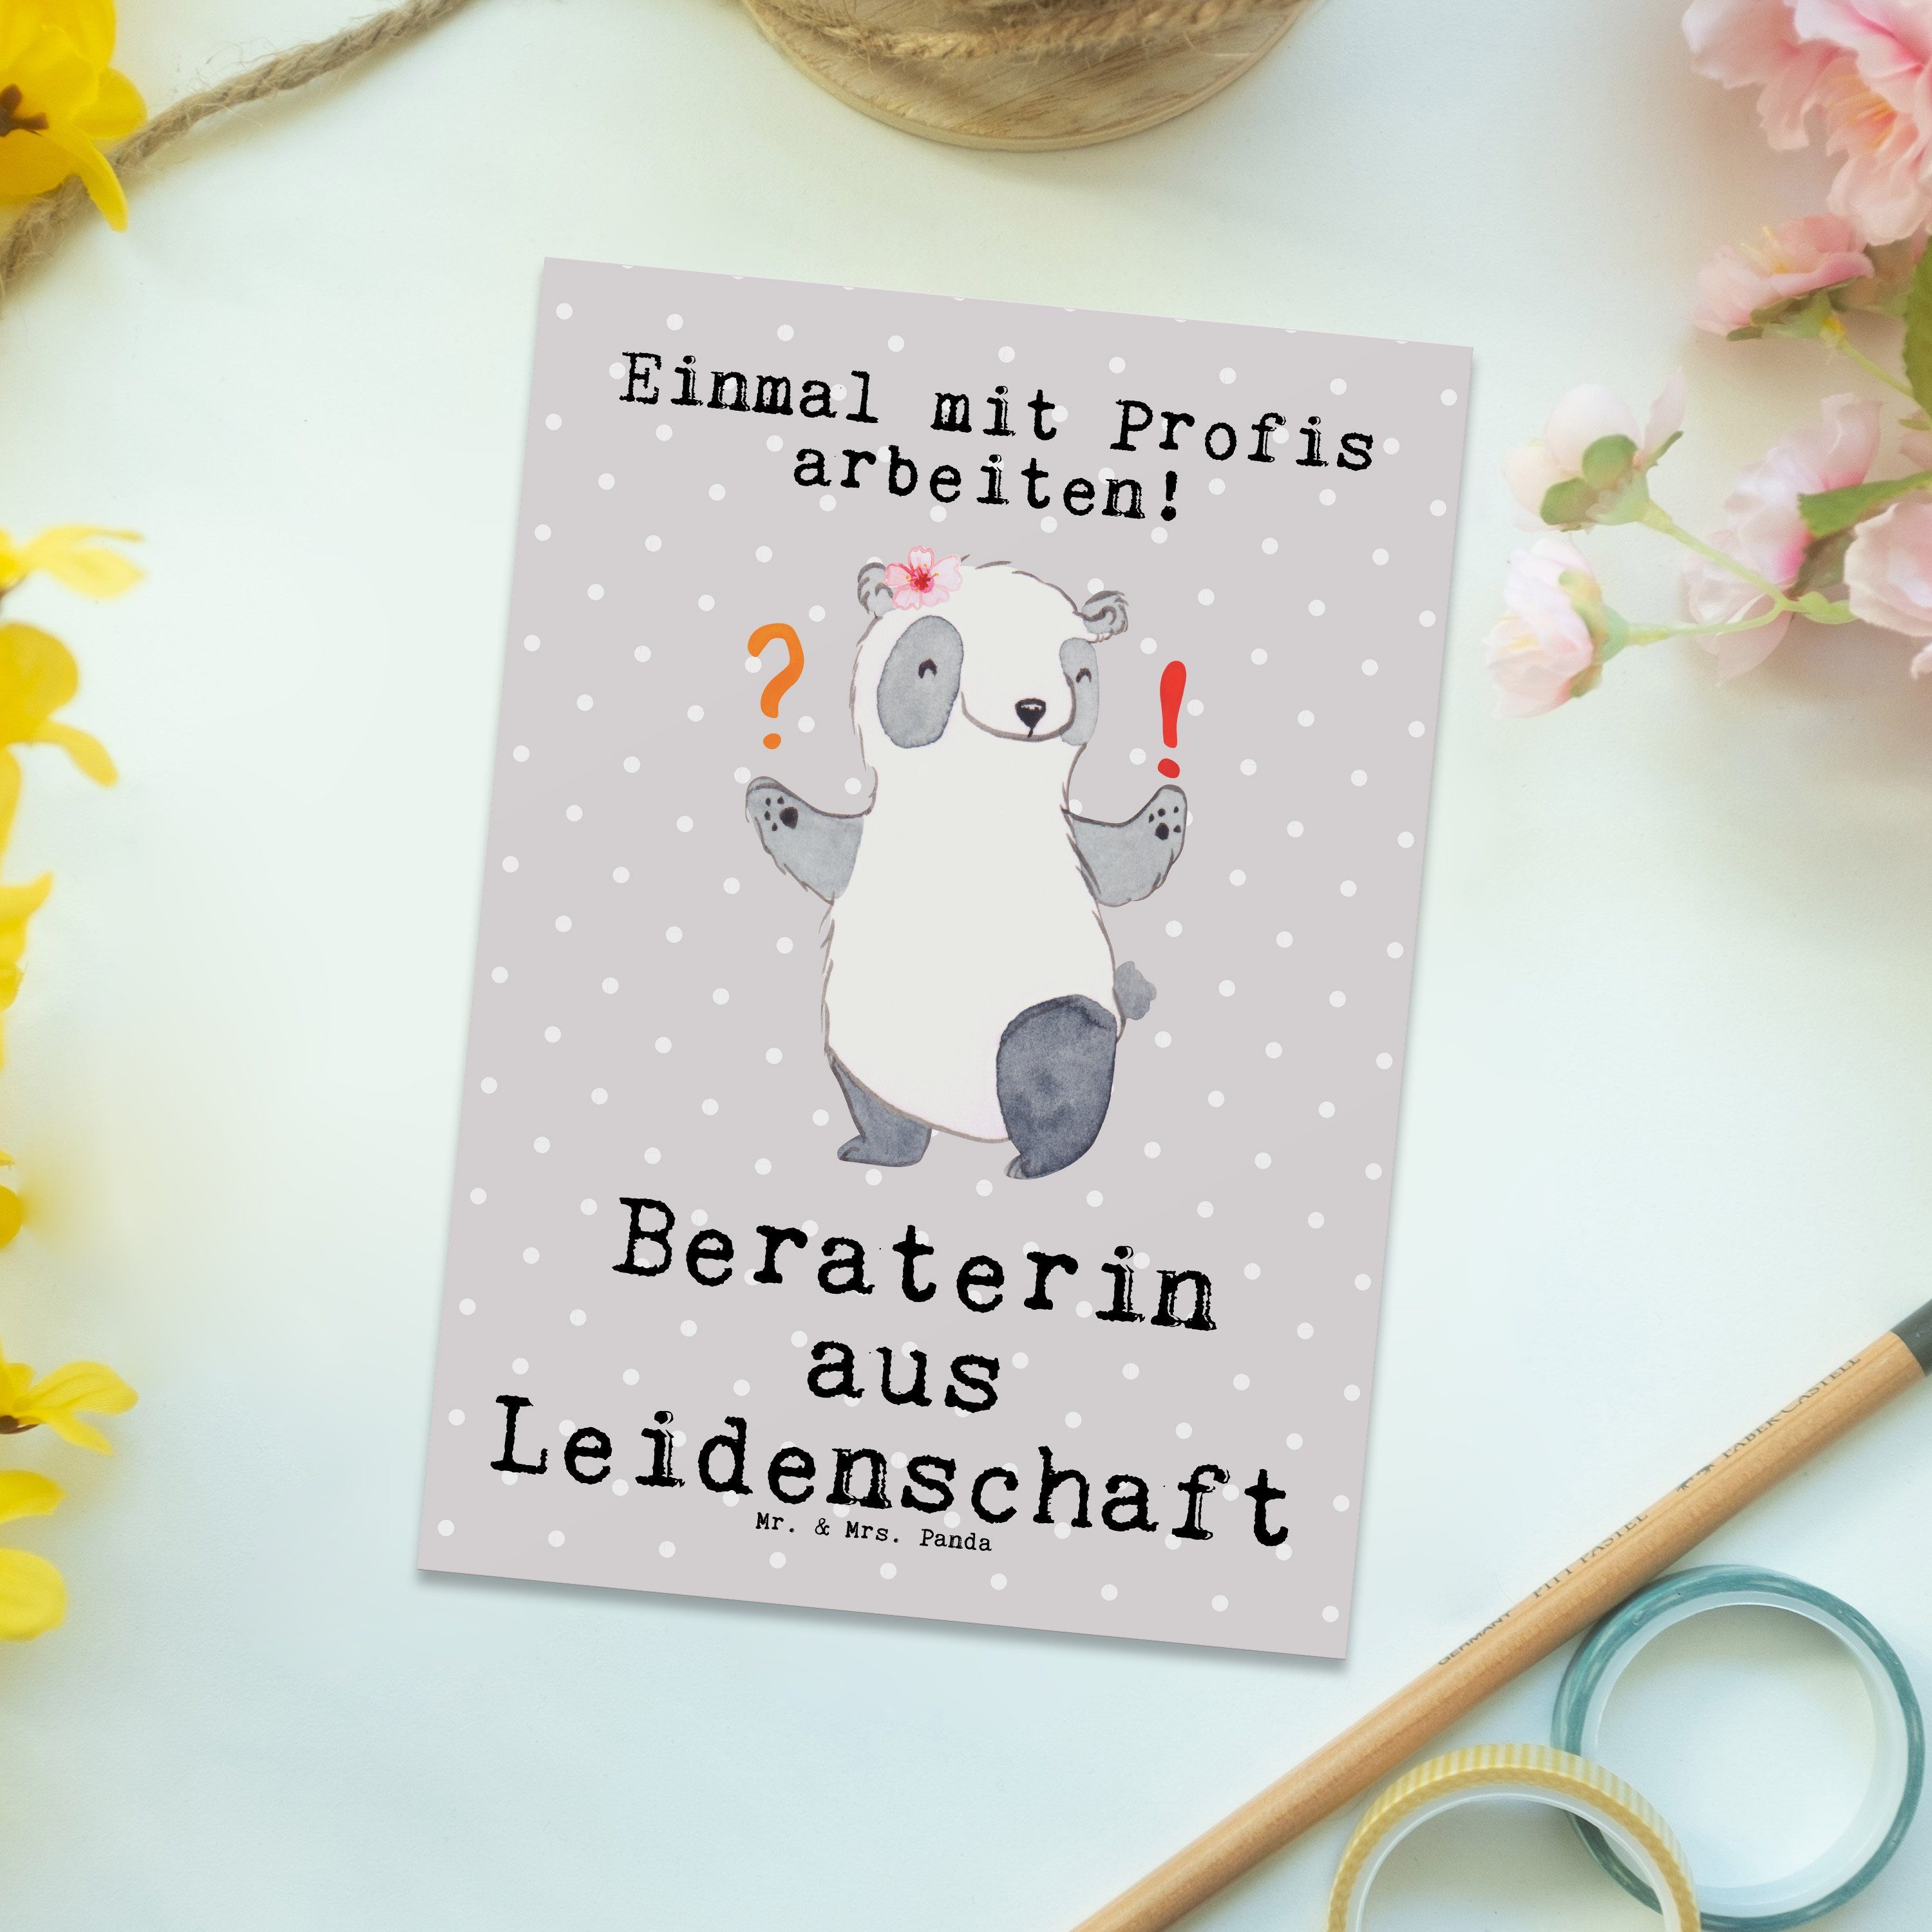 Finanzberaterin Beraterin Mrs. aus Leidenschaft Panda - Grau Mr. Geschenk, - Postkarte & Pastell